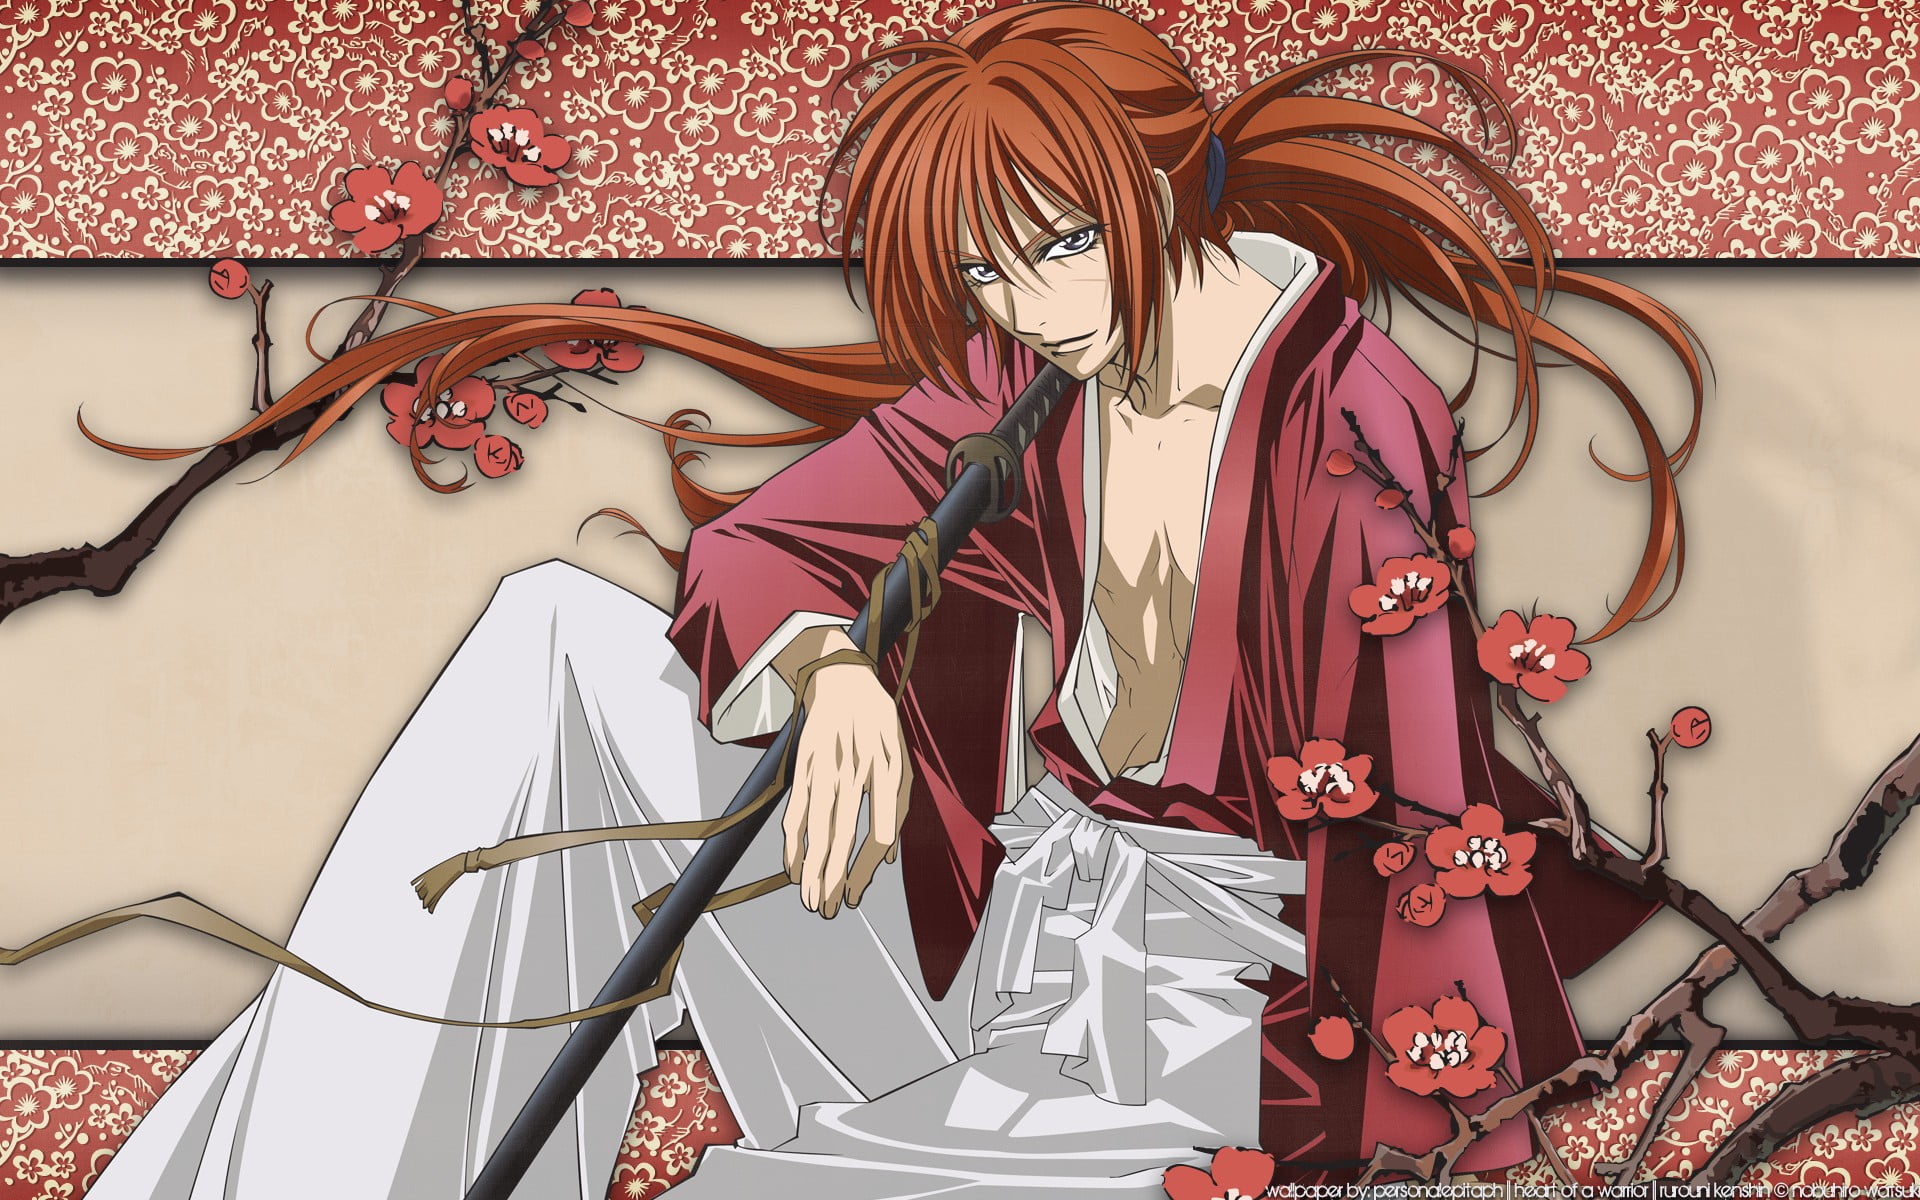 7. "Kenshin Himura" from Rurouni Kenshin - wide 2